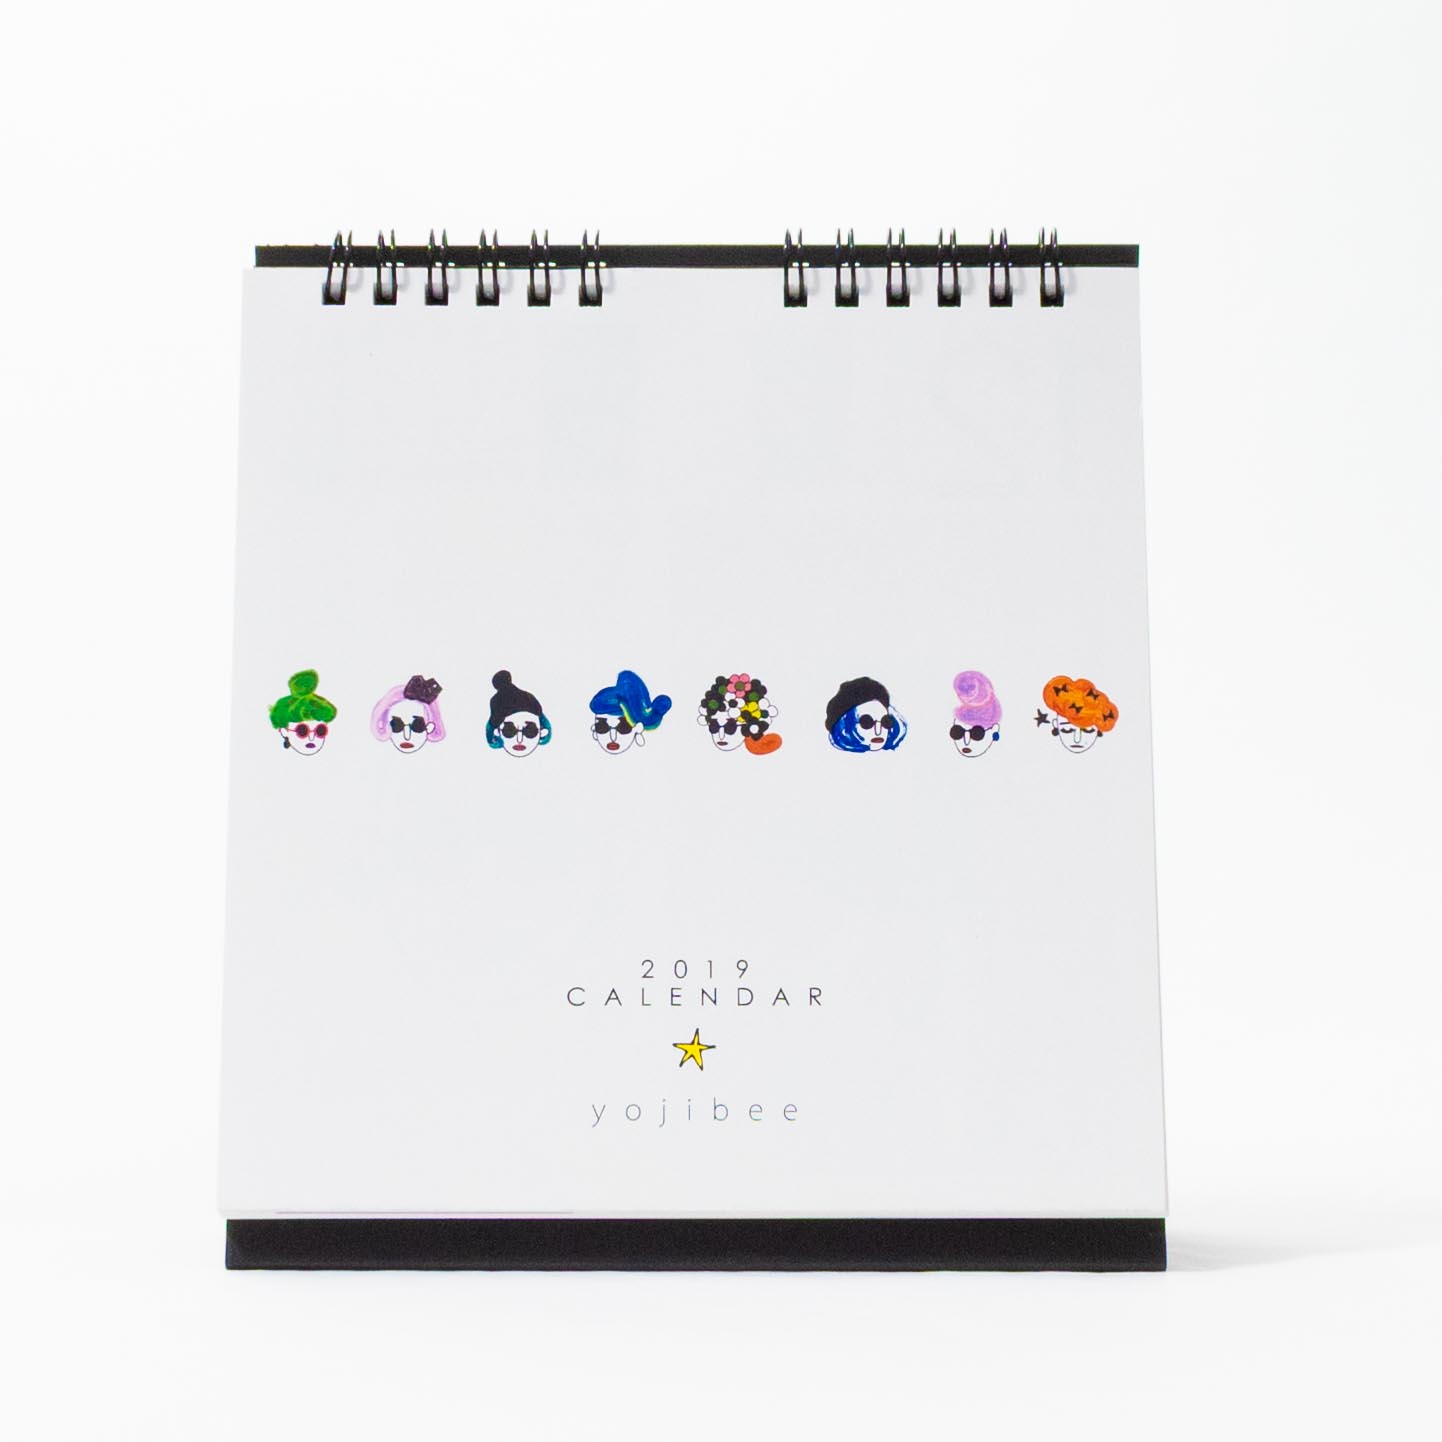 「yojibee 様」製作のオリジナルカレンダー